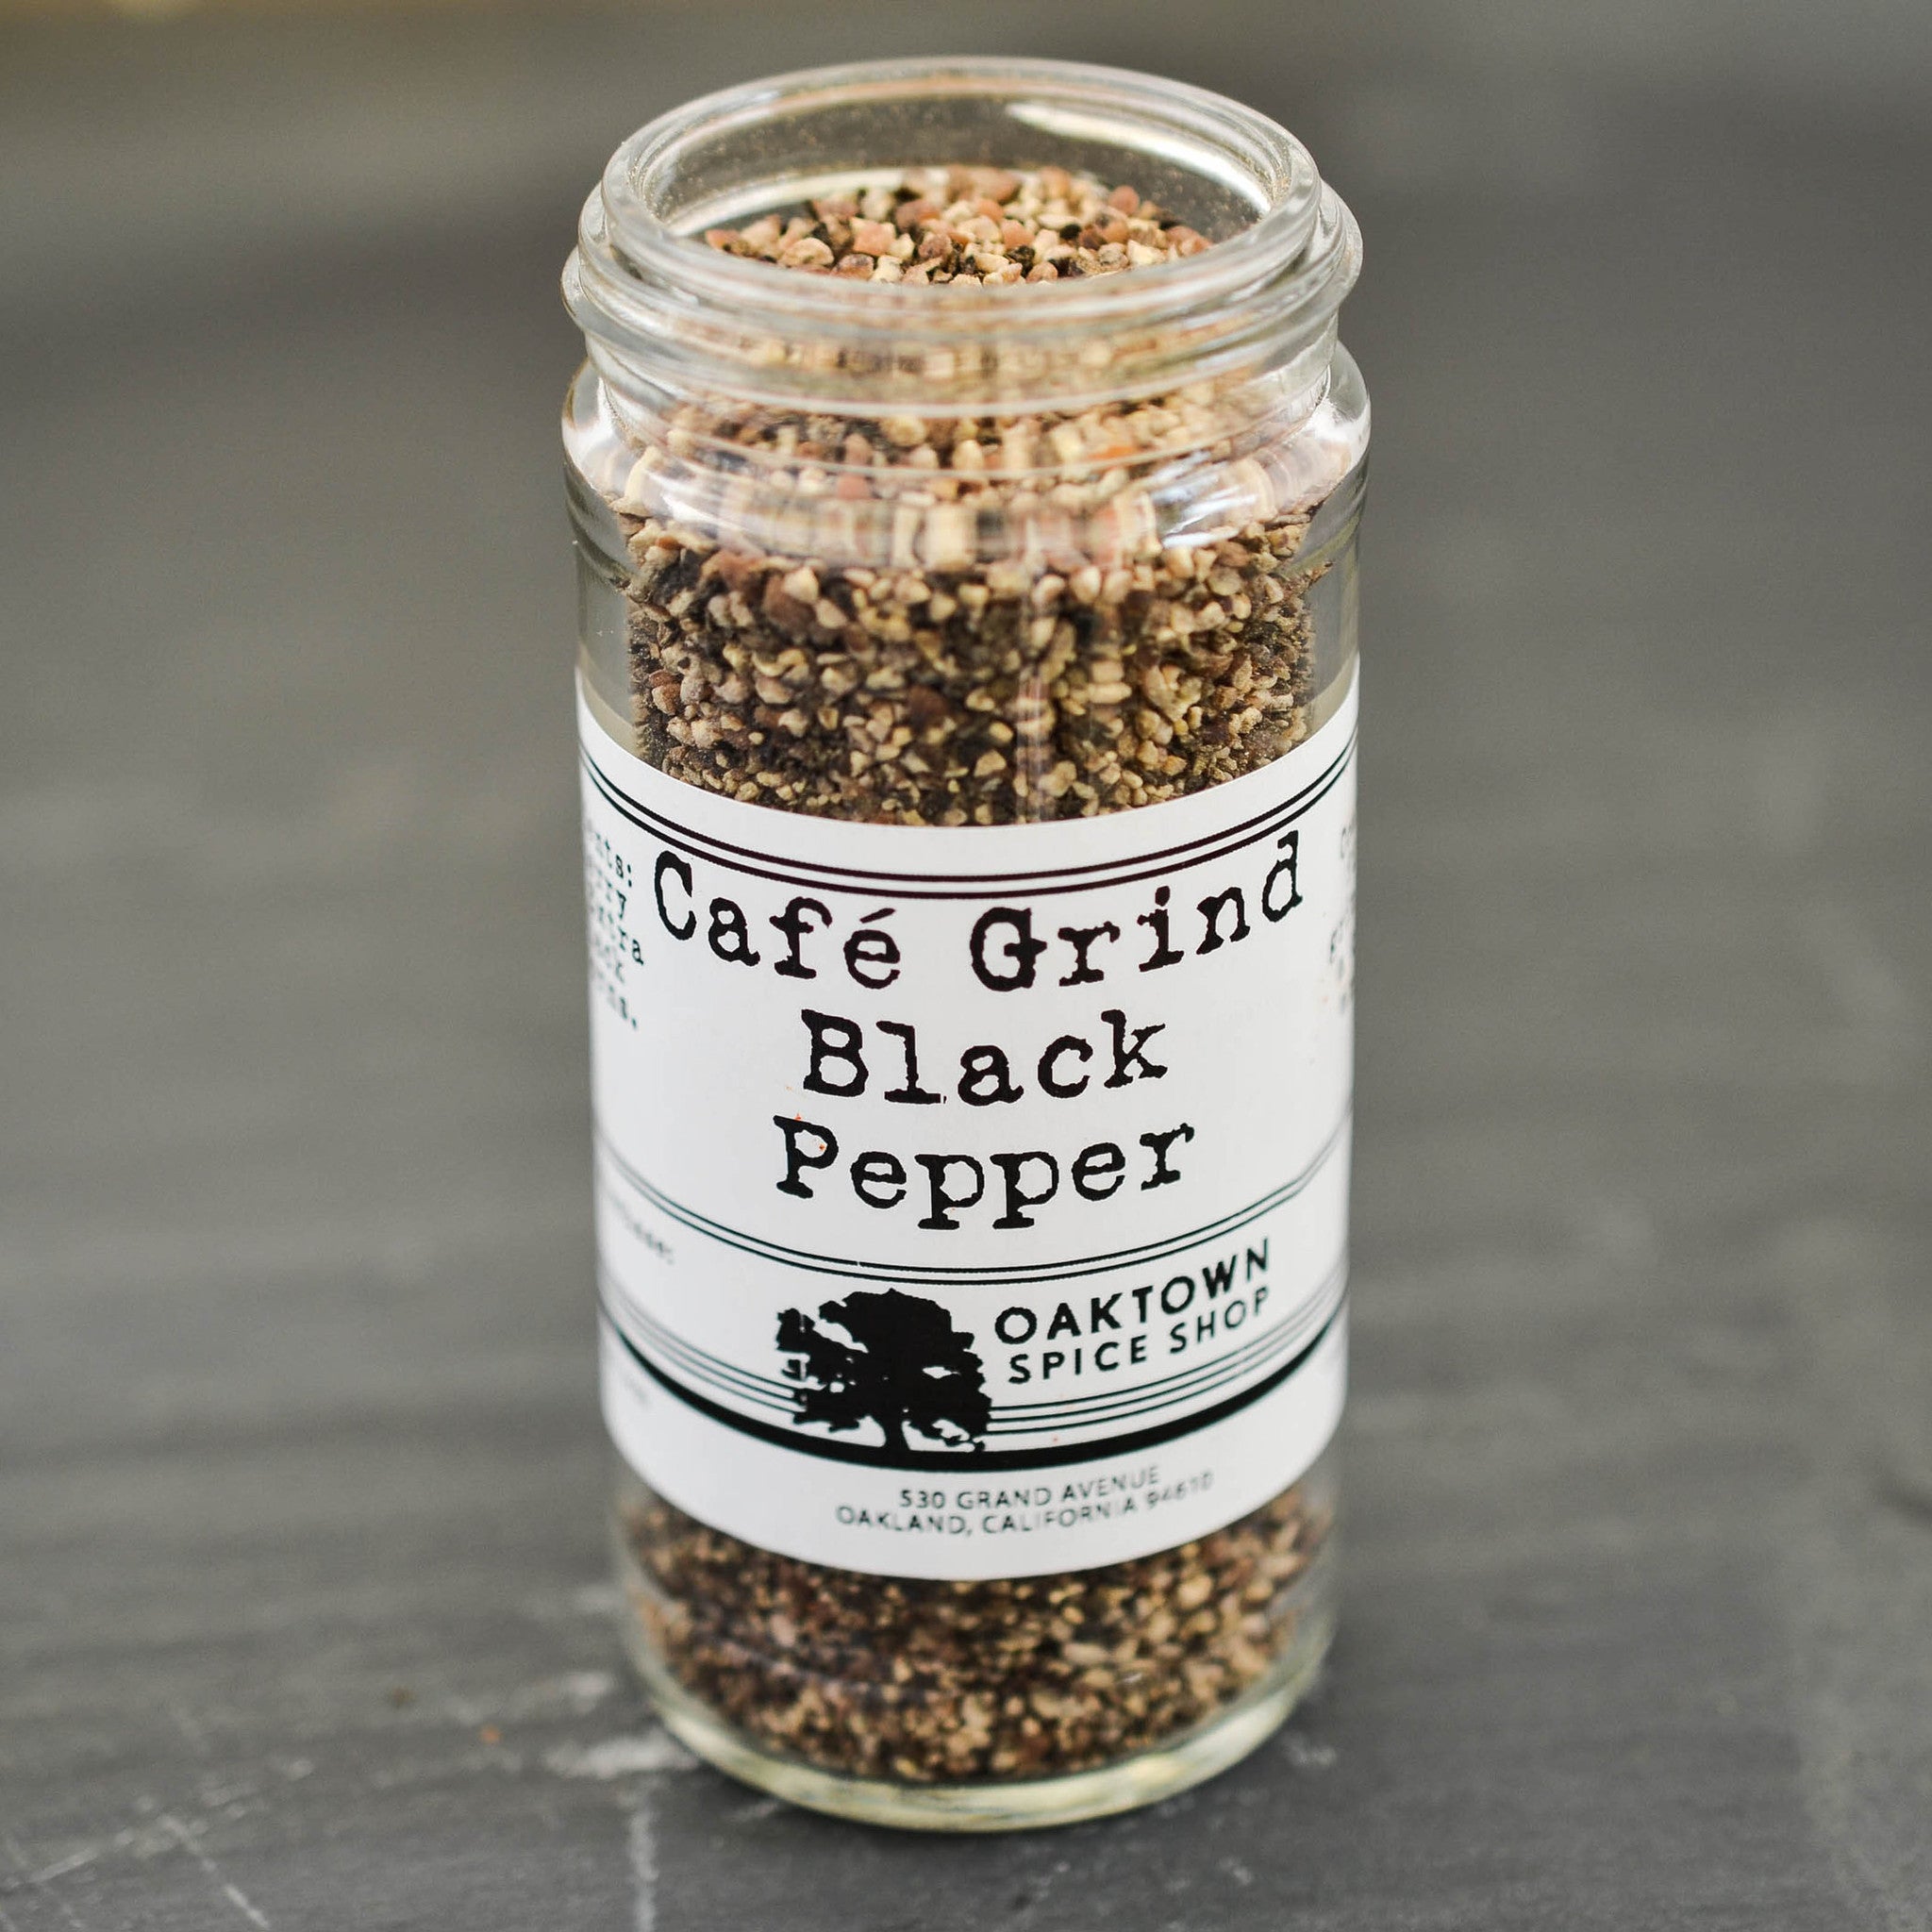 Black Pepper, Cafe Grind